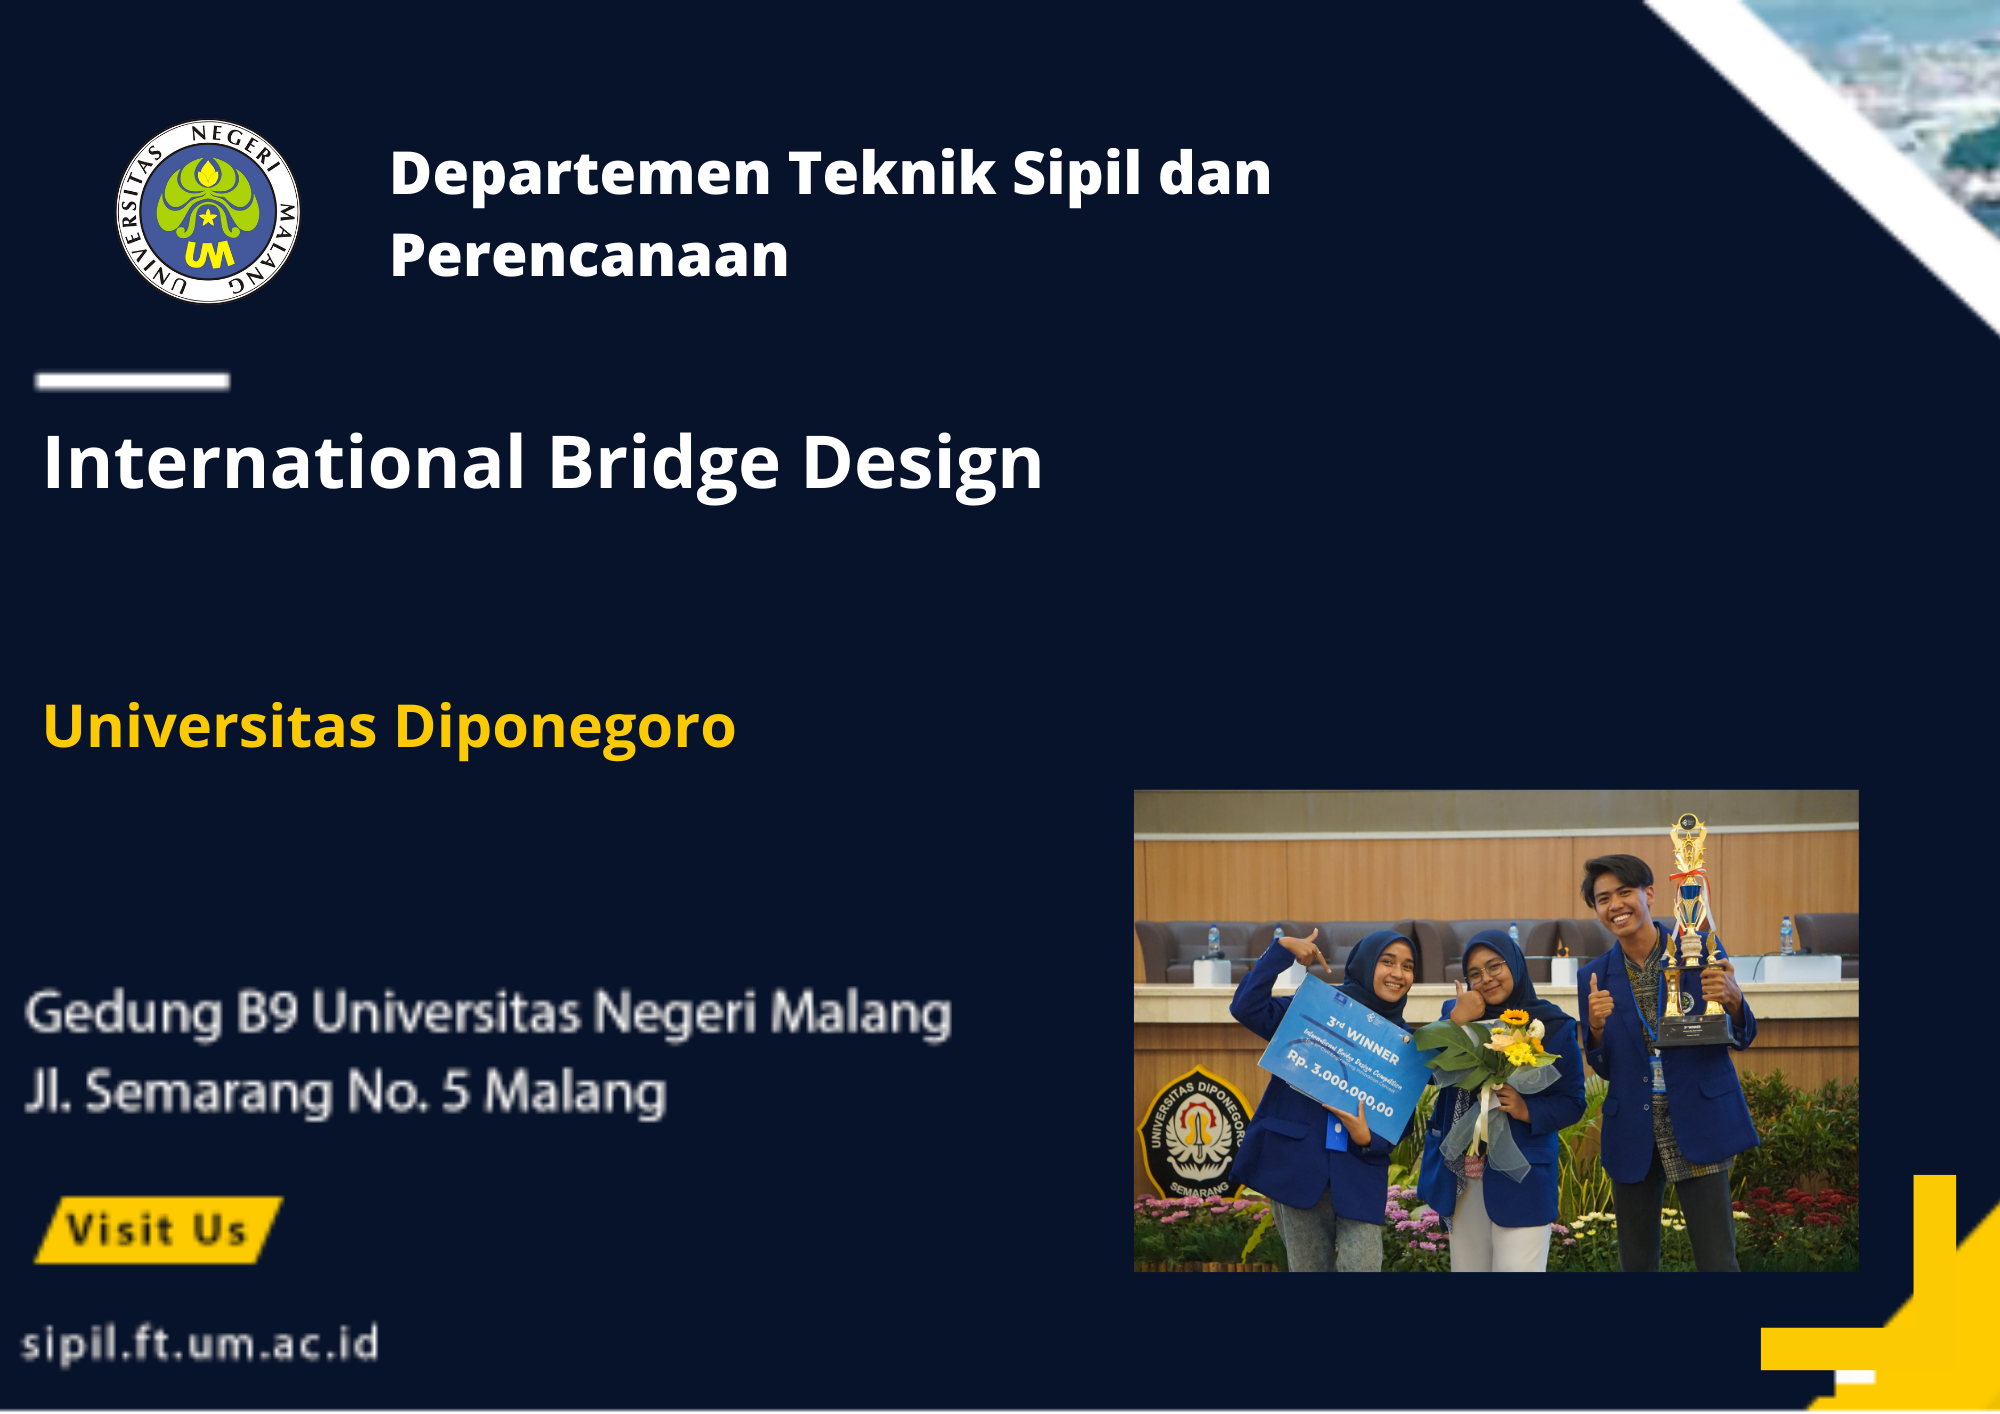 Juara 3 International Bridge Design di Universitas Diponegoro